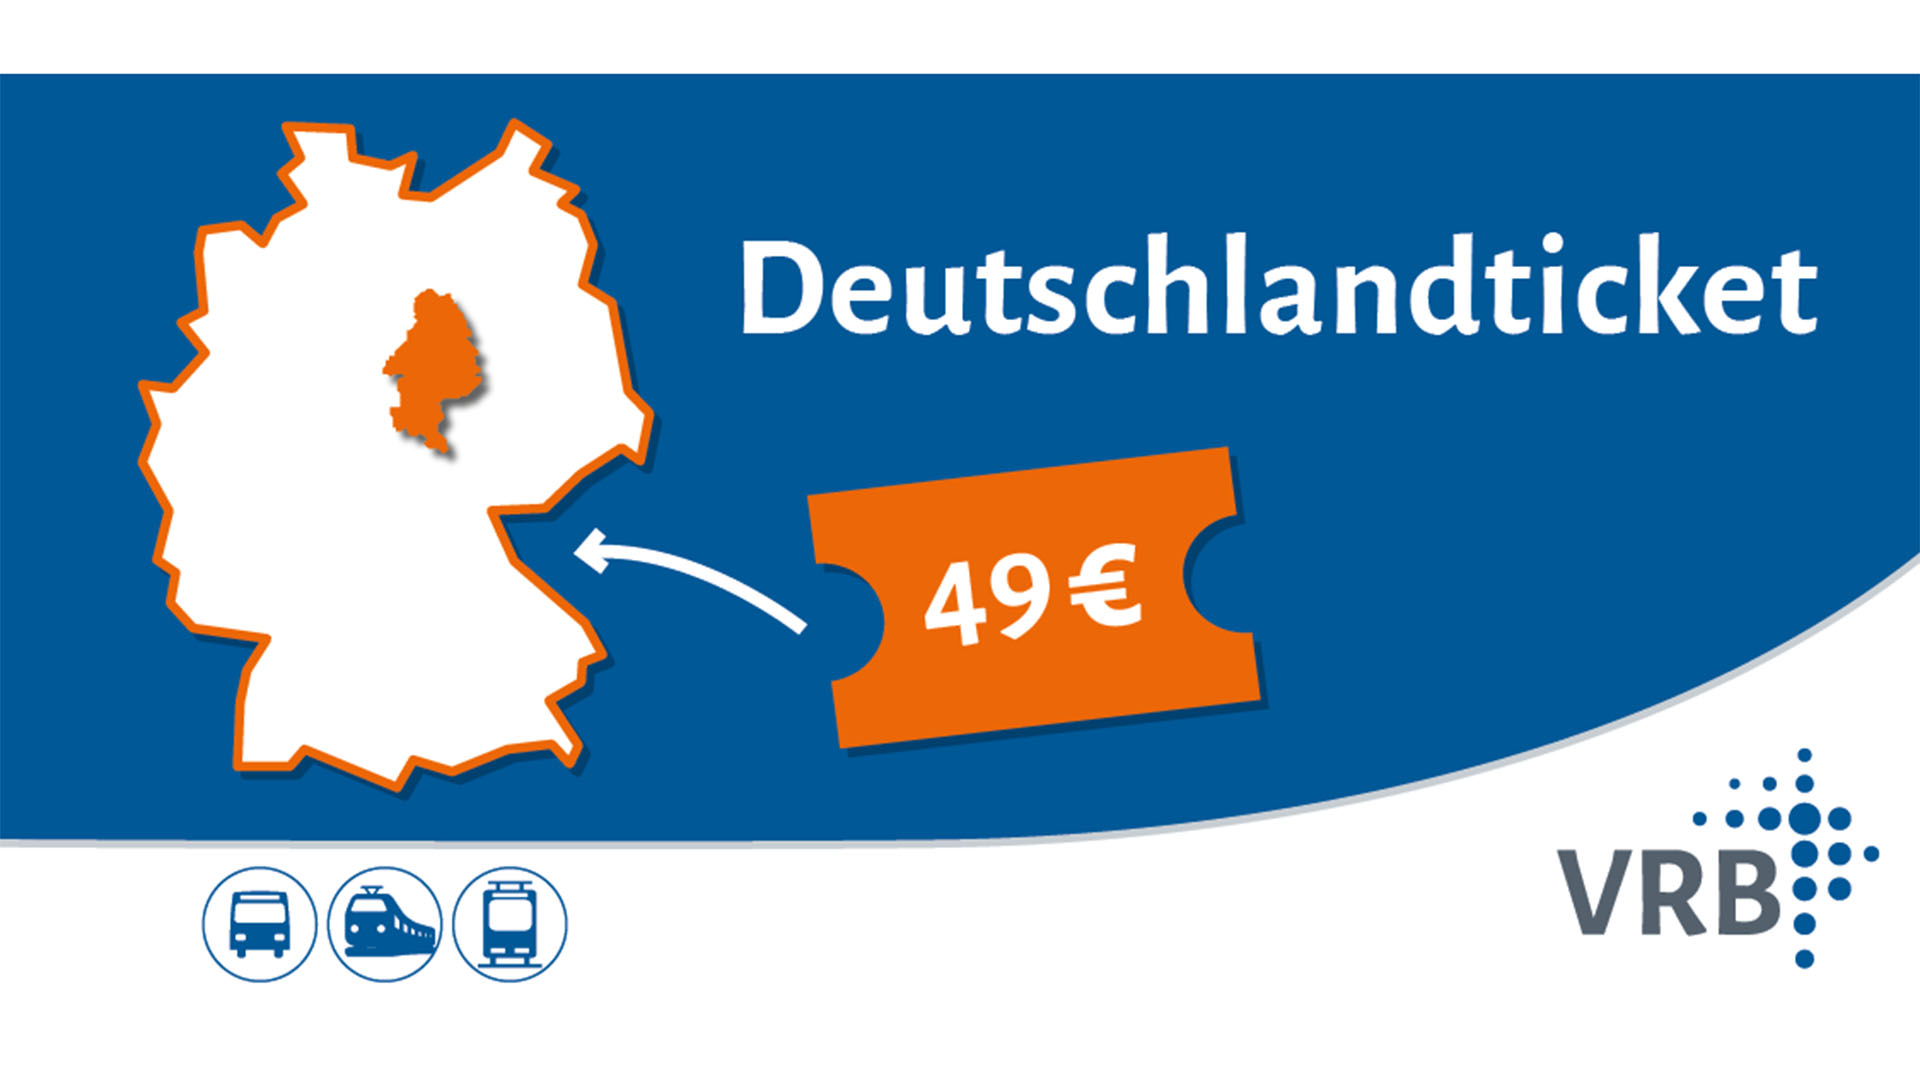 Abbildung eines Deutschlandtickets für 49 Euro